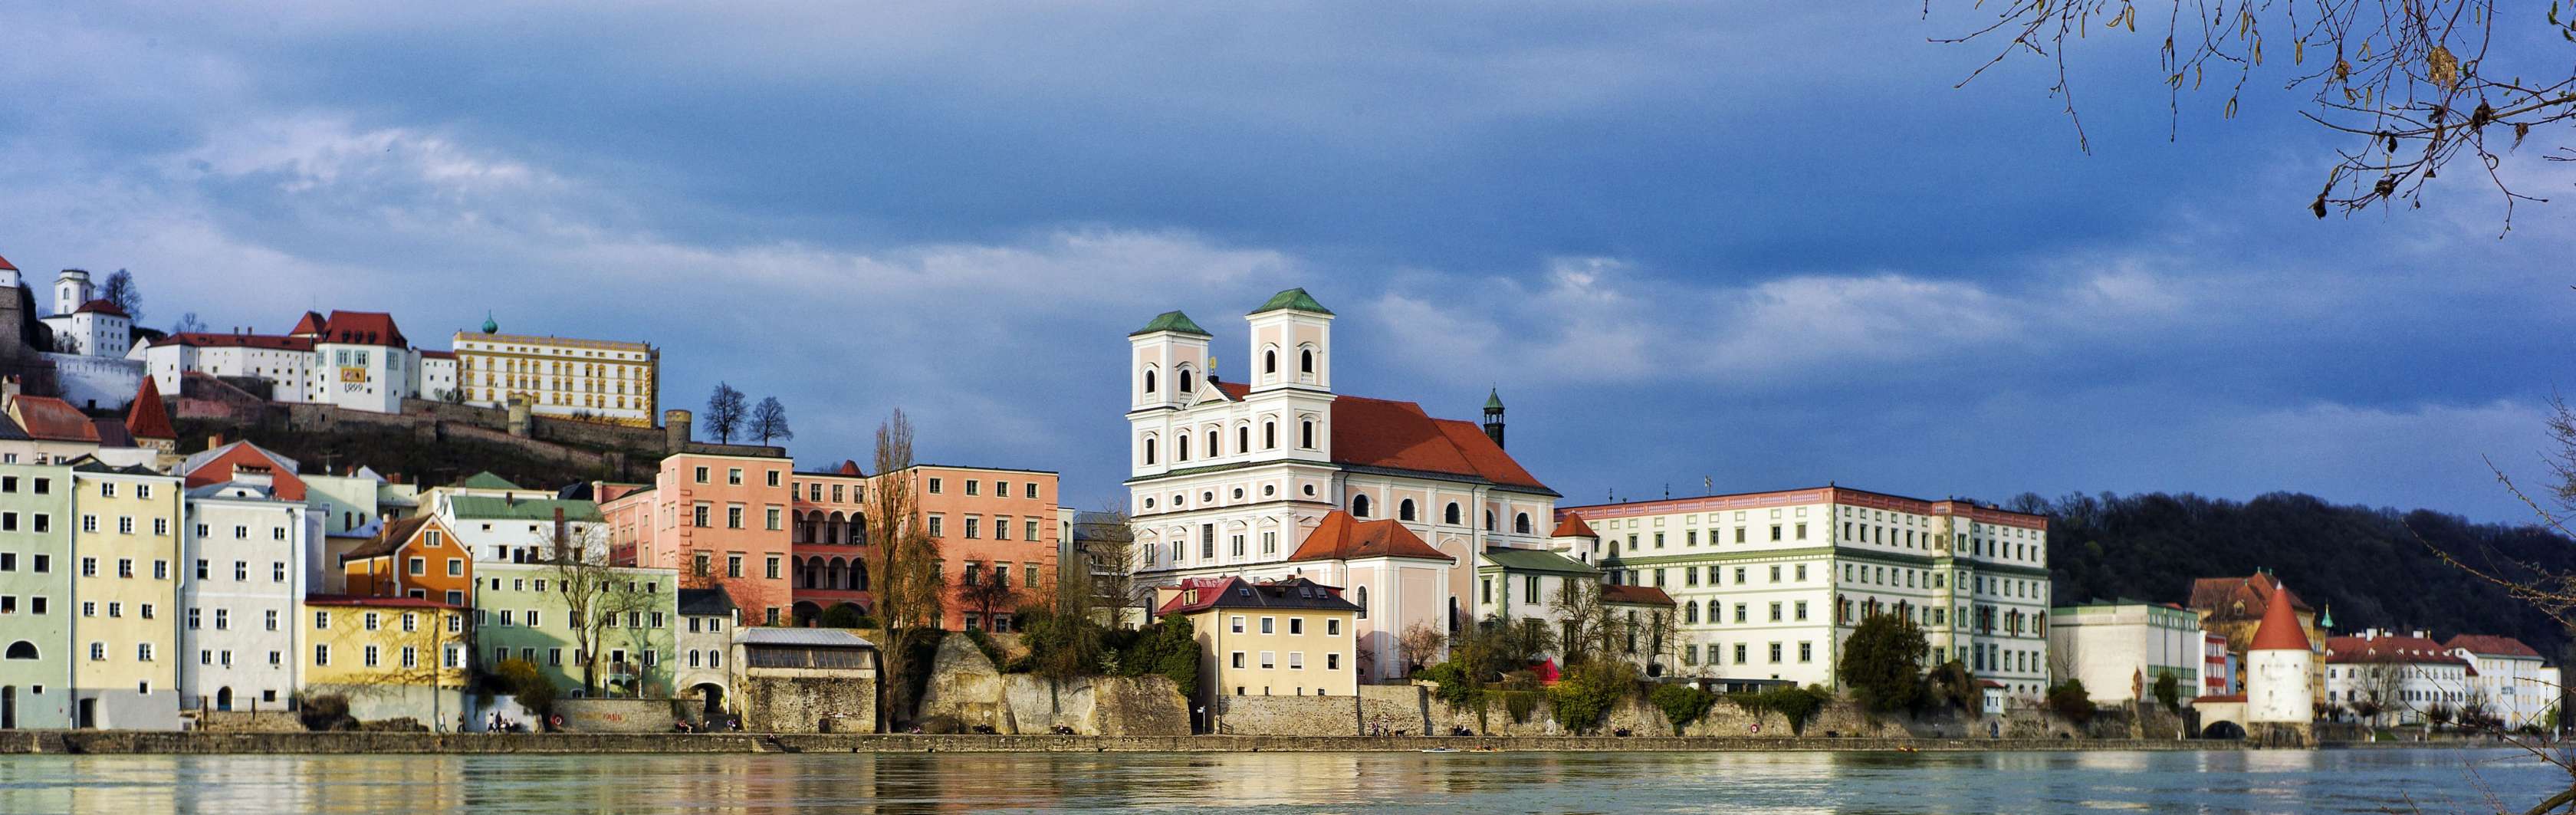 Versicherung in Passau: Finden Sie den passenden Experten und vereinbaren Sie Ihren persönlichen Beratungstermin